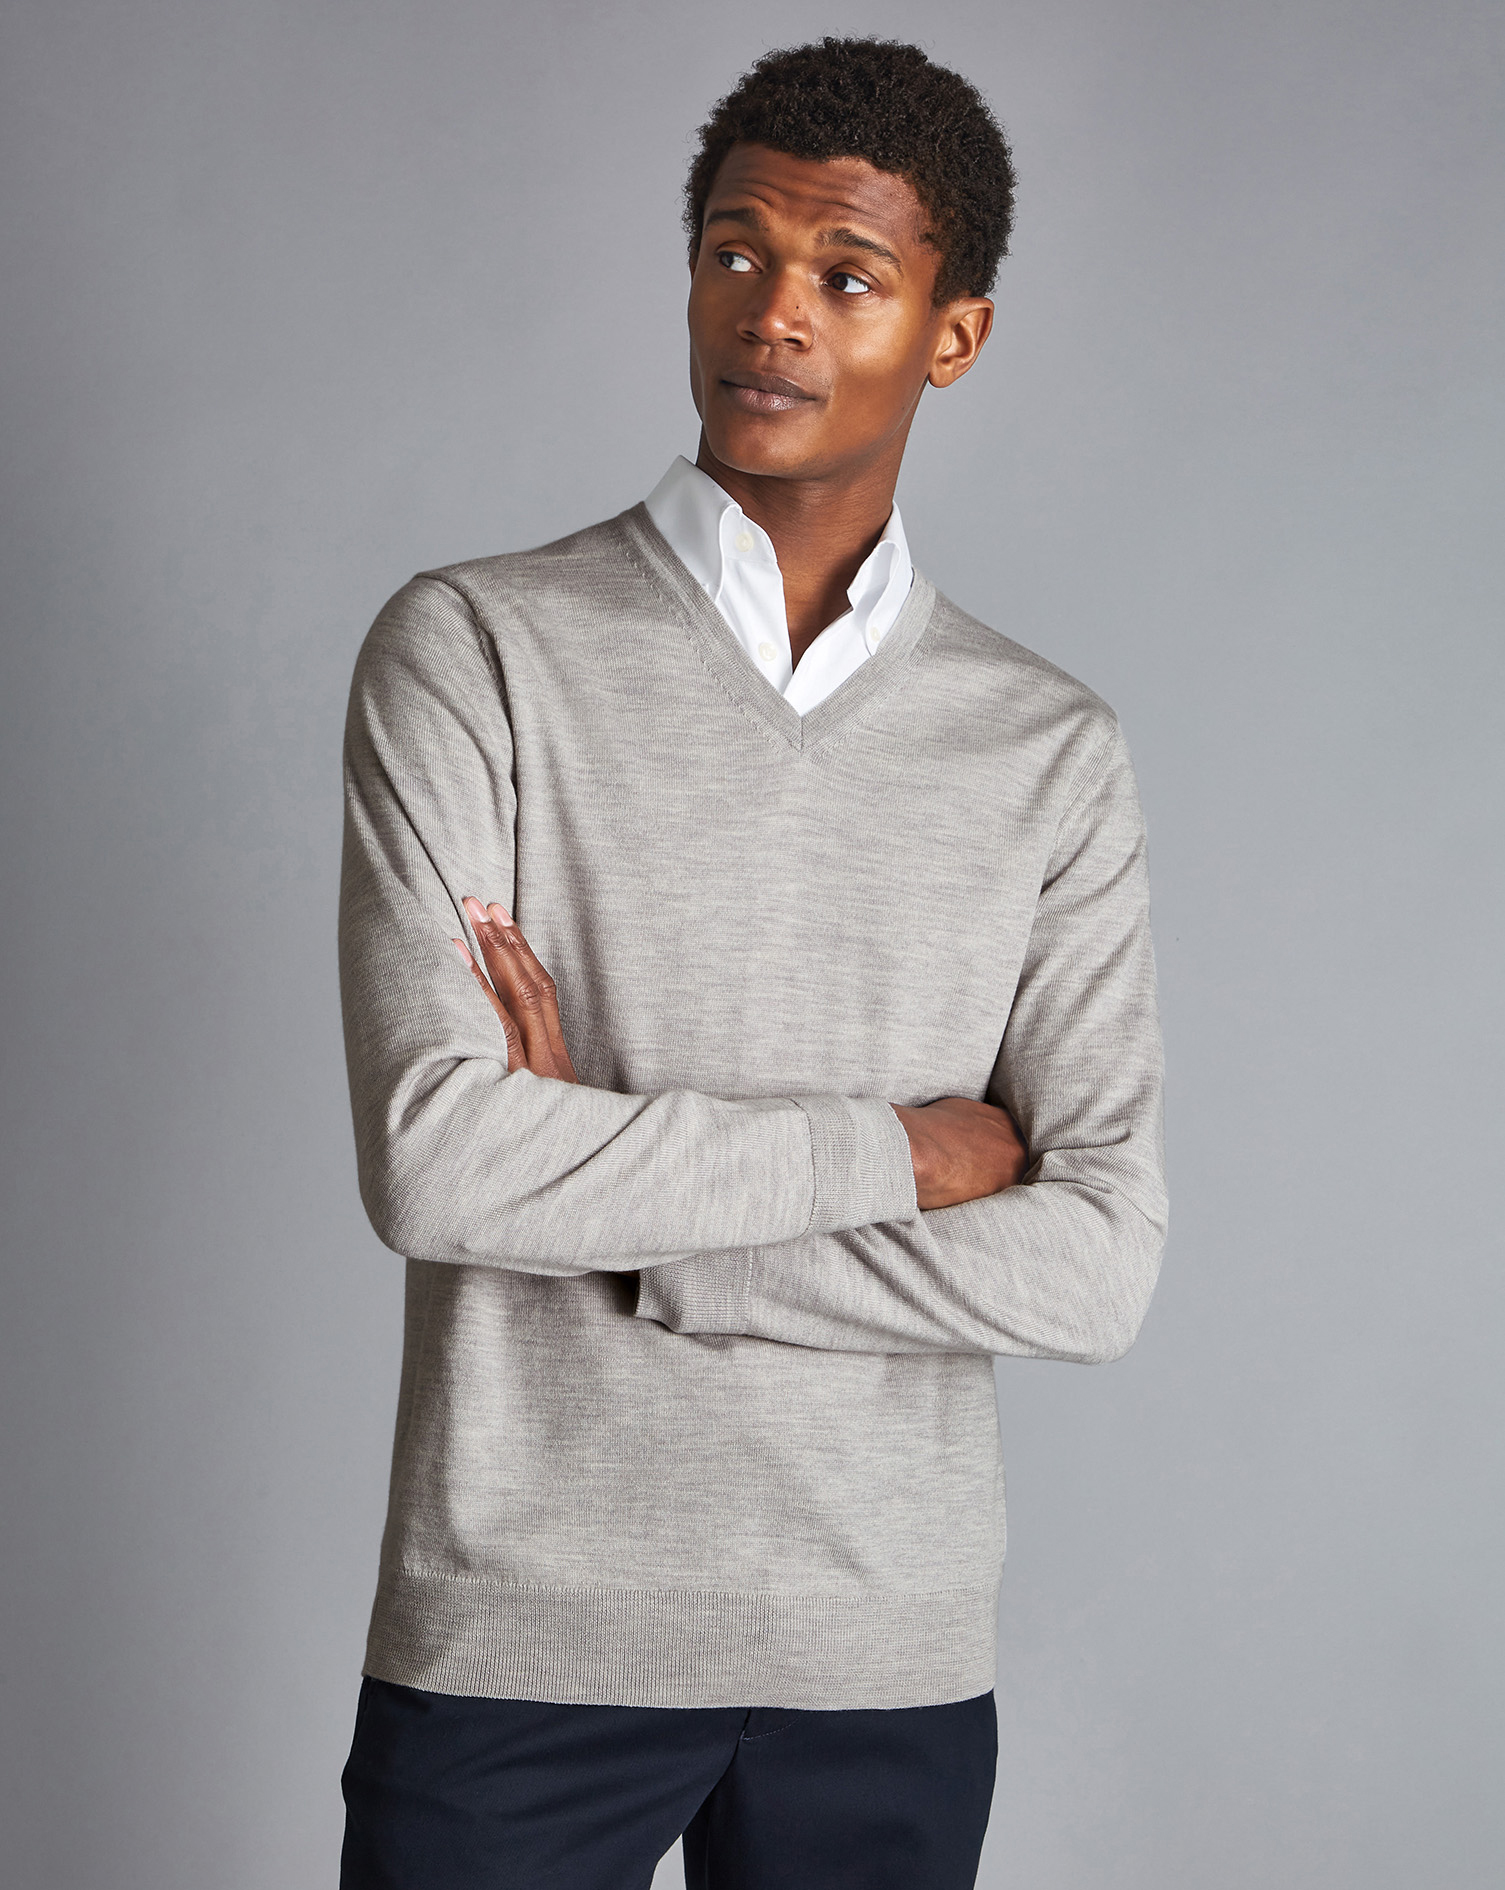 Men's Charles Tyrwhitt V-Neck Sweater - Silver Grey Size Large Merino
